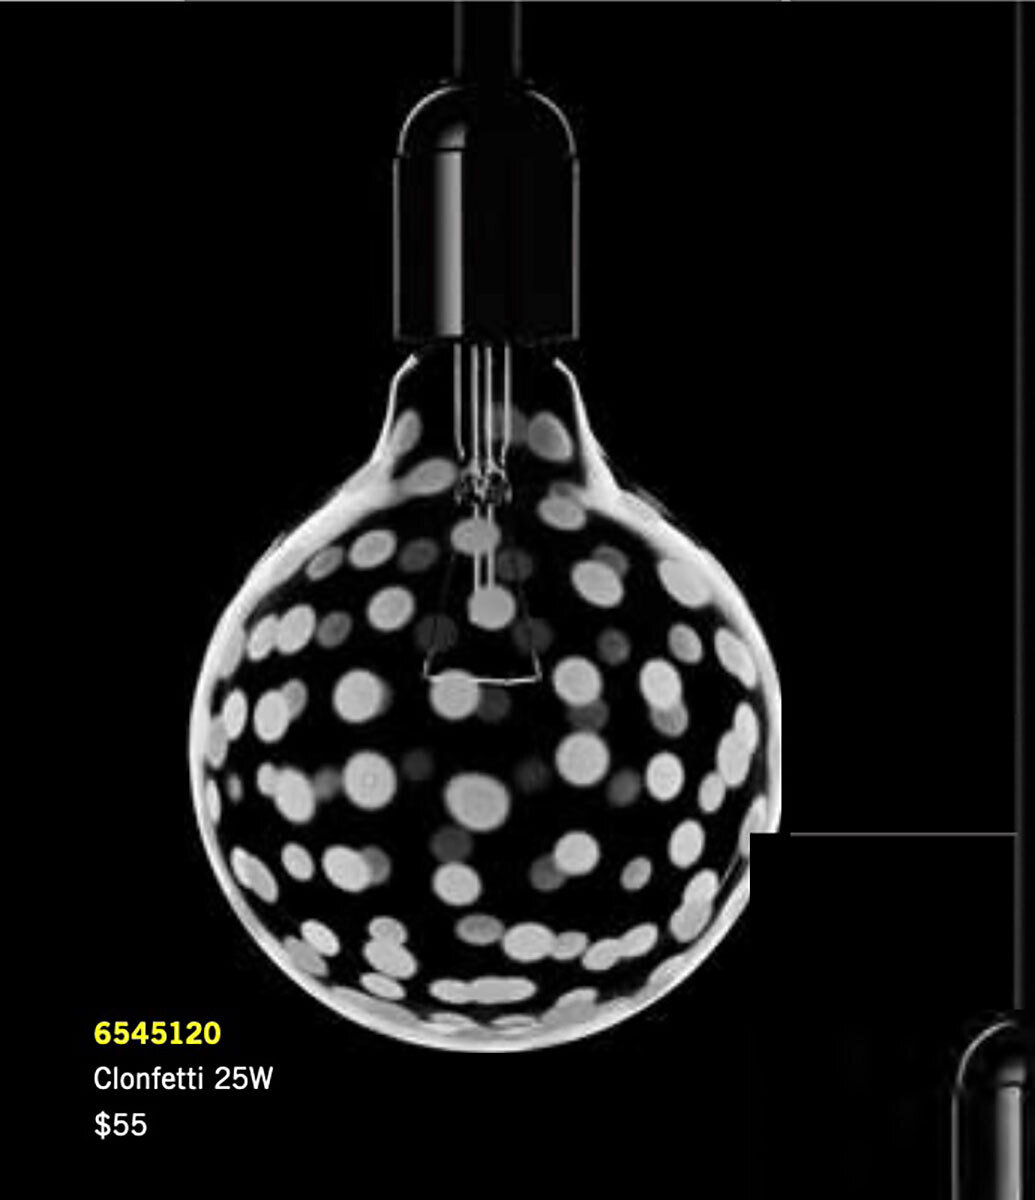 Orrefors Light Shadow Bulb Confetti 25W 6545120